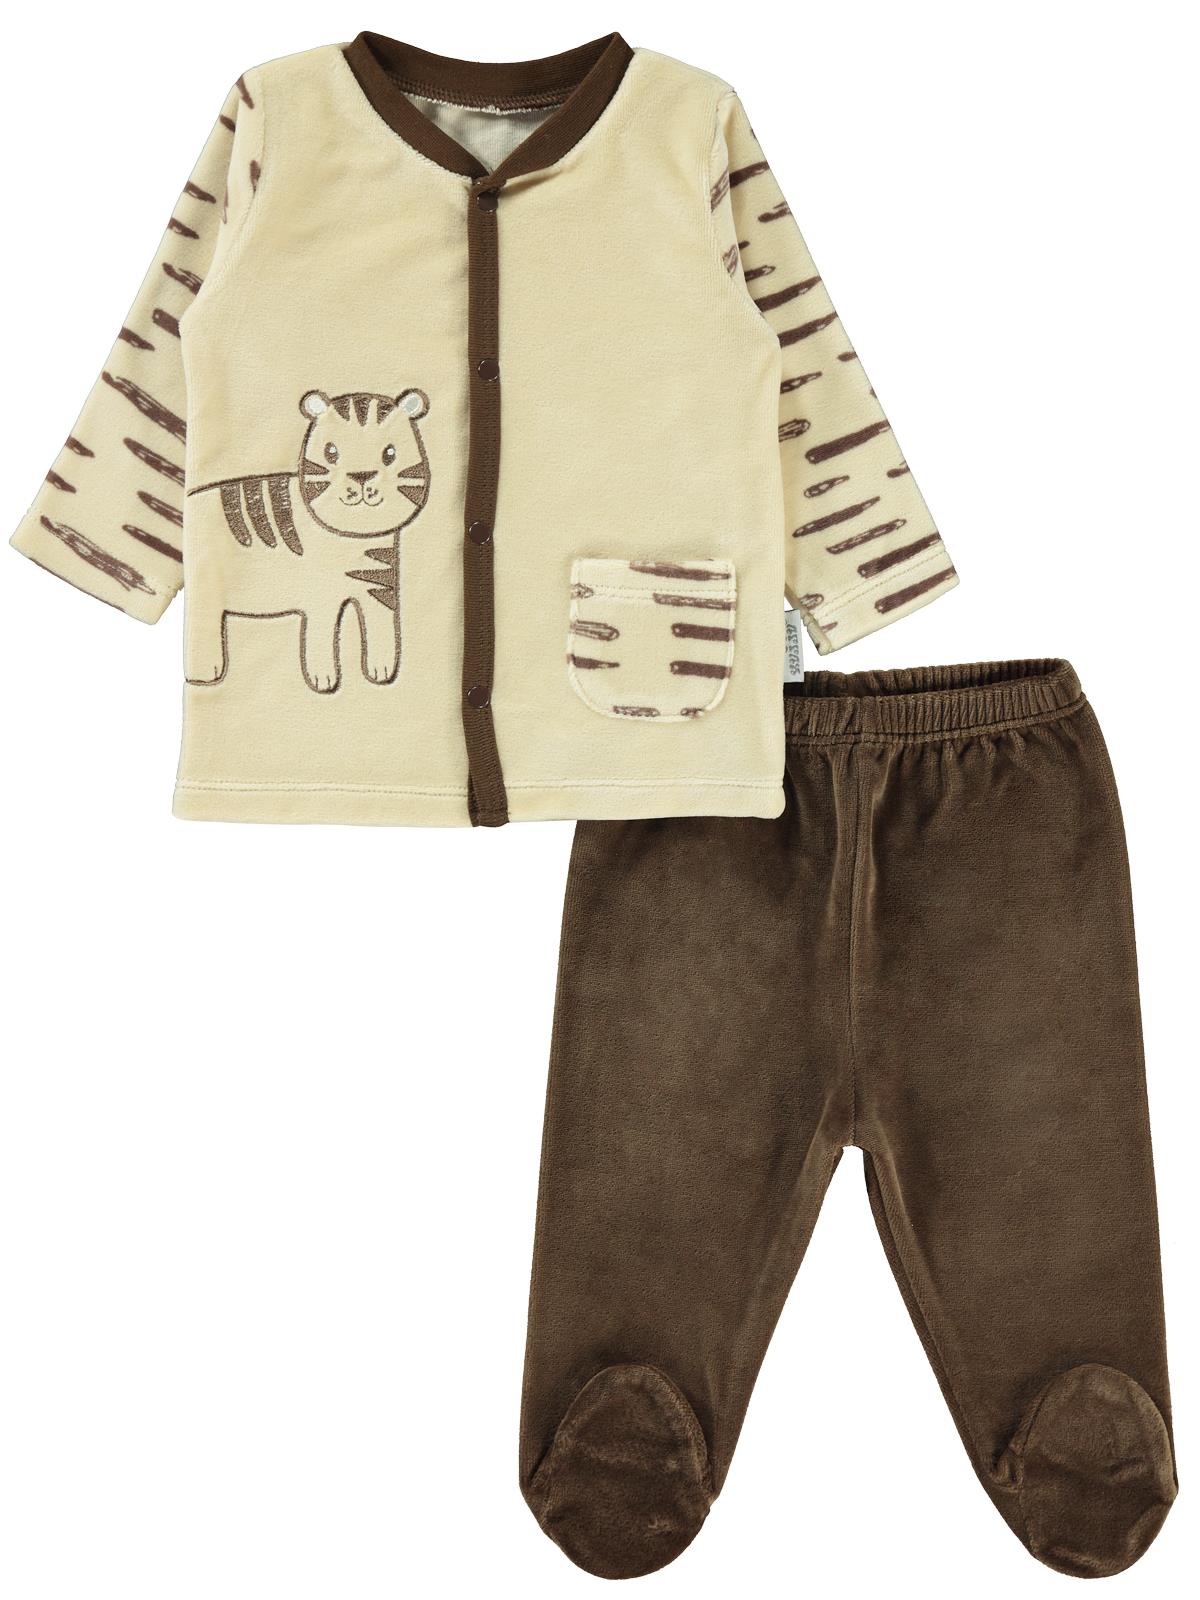 Kujju Erkek Bebek Pijama Takımı 3-6 Ay Kahverengi